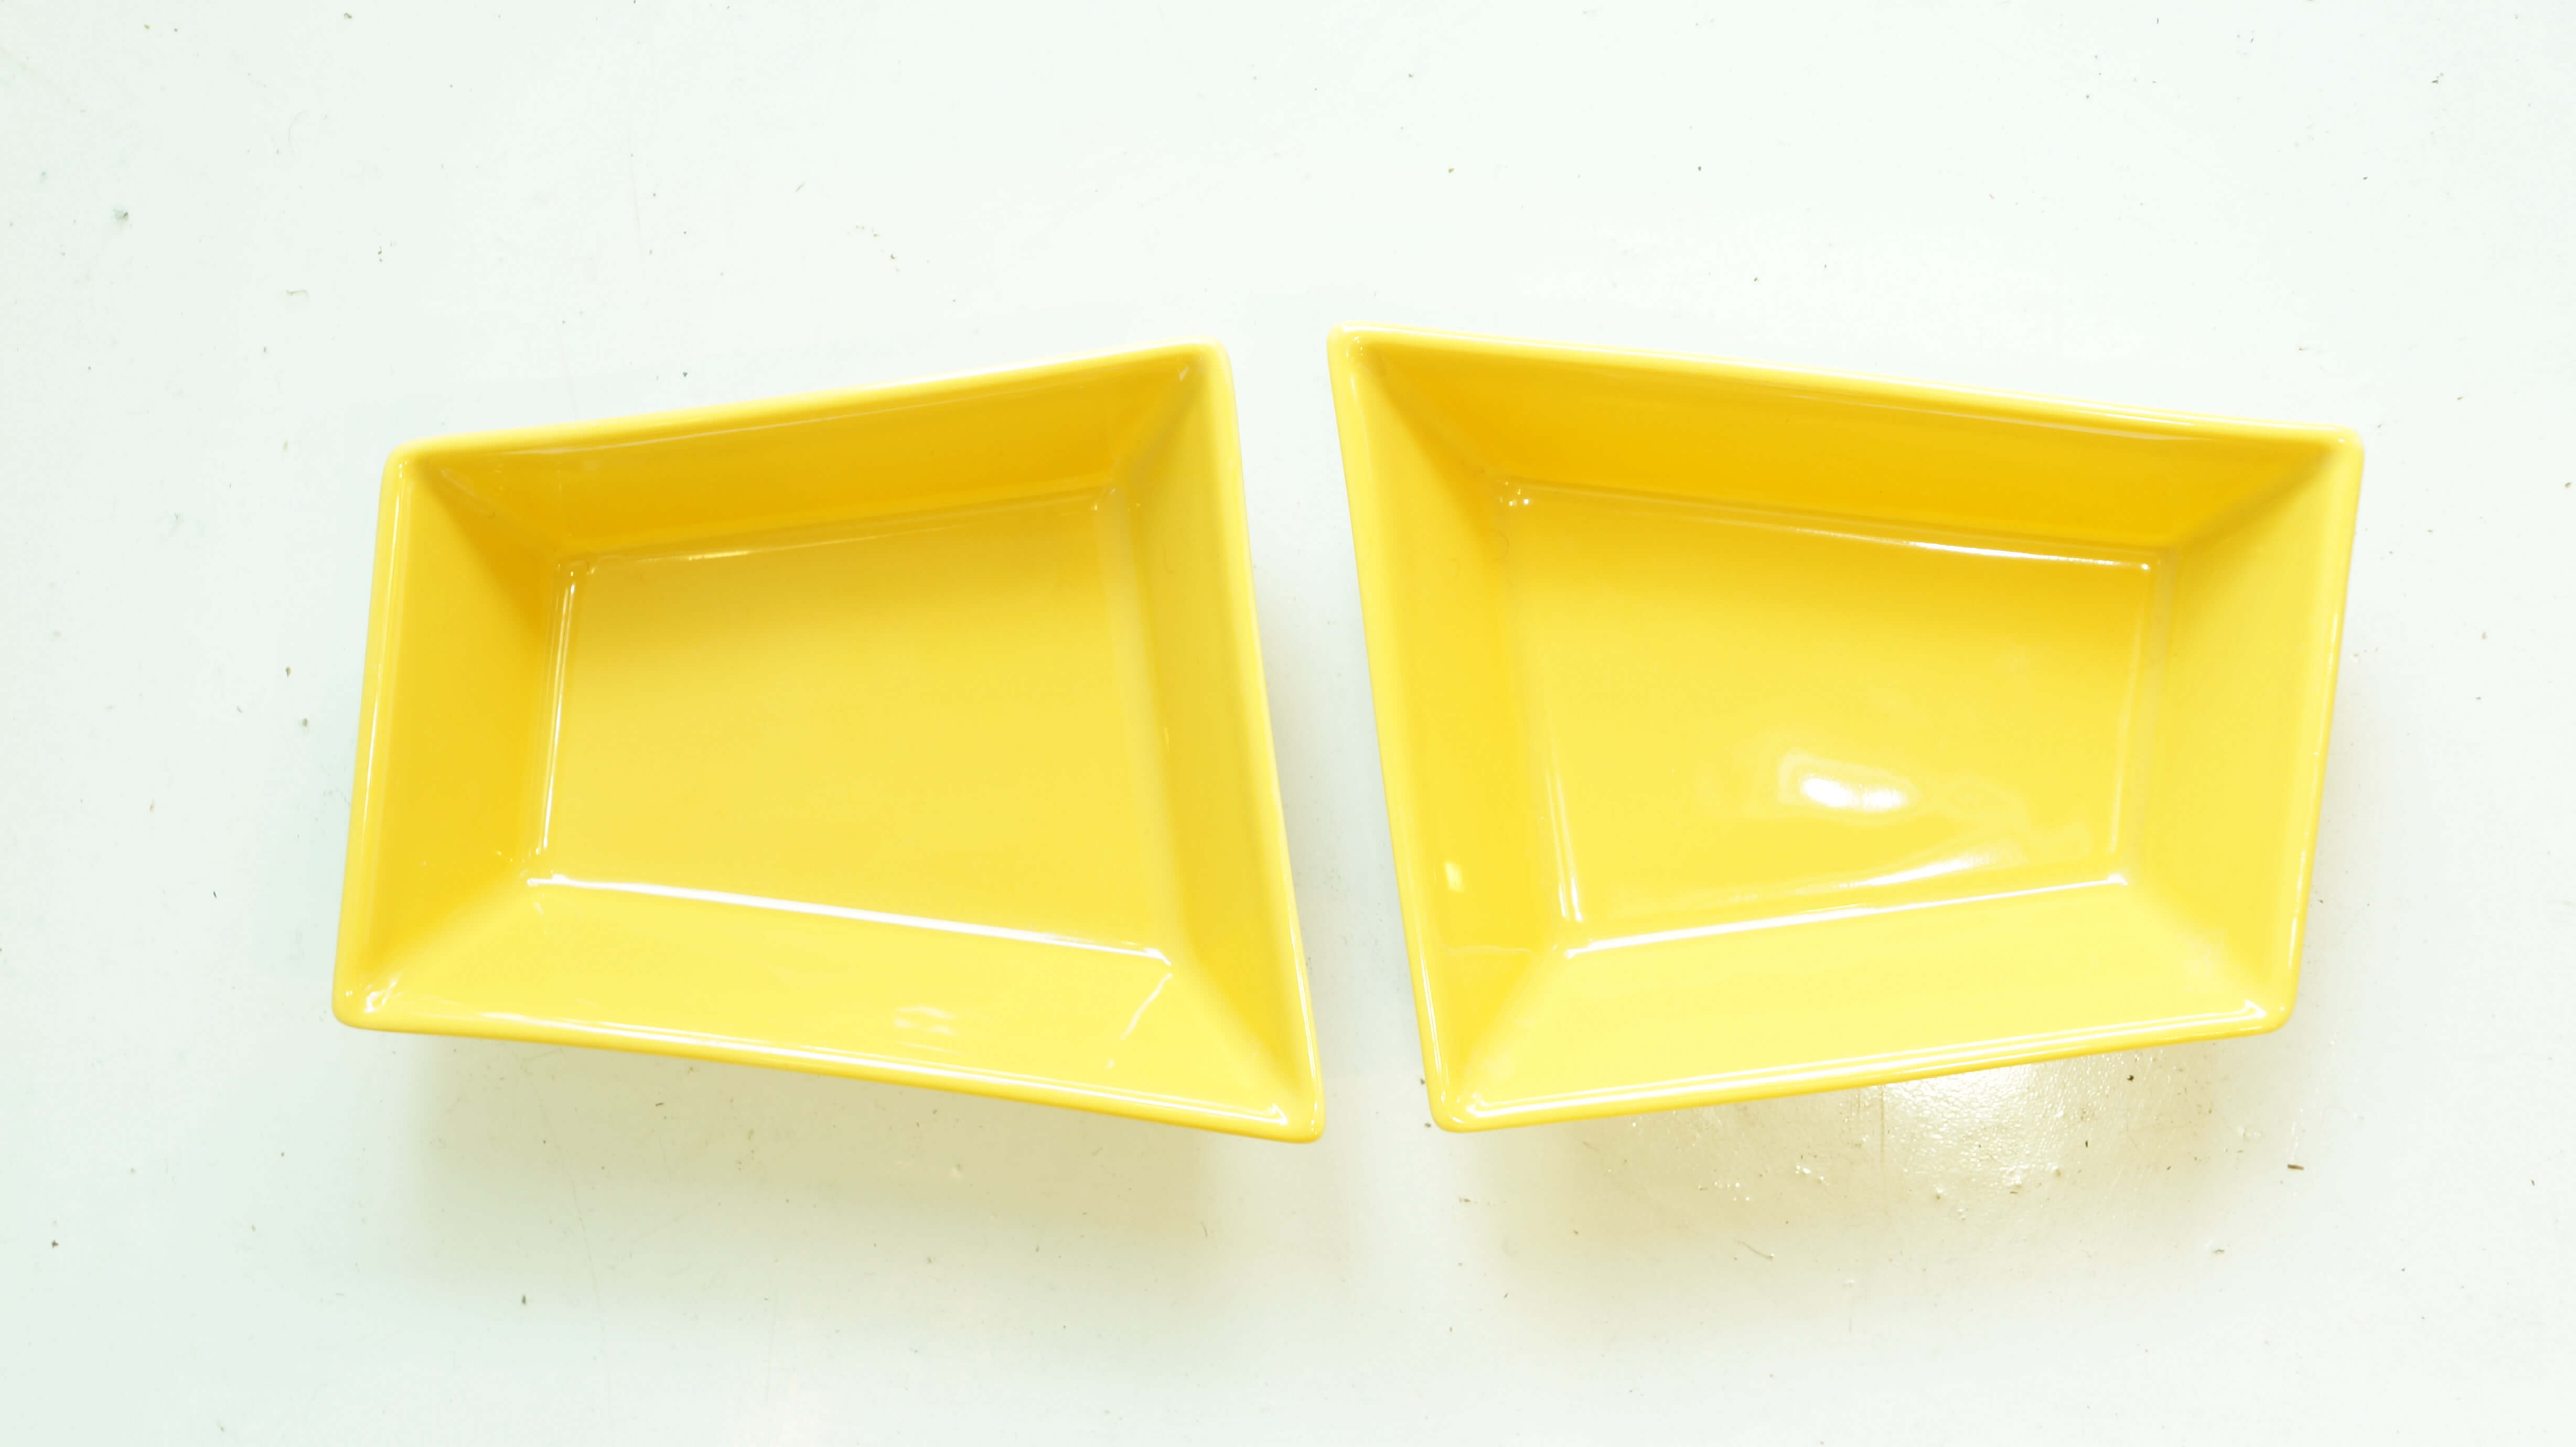 ARABIA "ABC" plate yellow M size designed by Pekka Harni/アラビア "ABC" プレート イエロー Mサイズ ペッカ・ハルニ デザイン